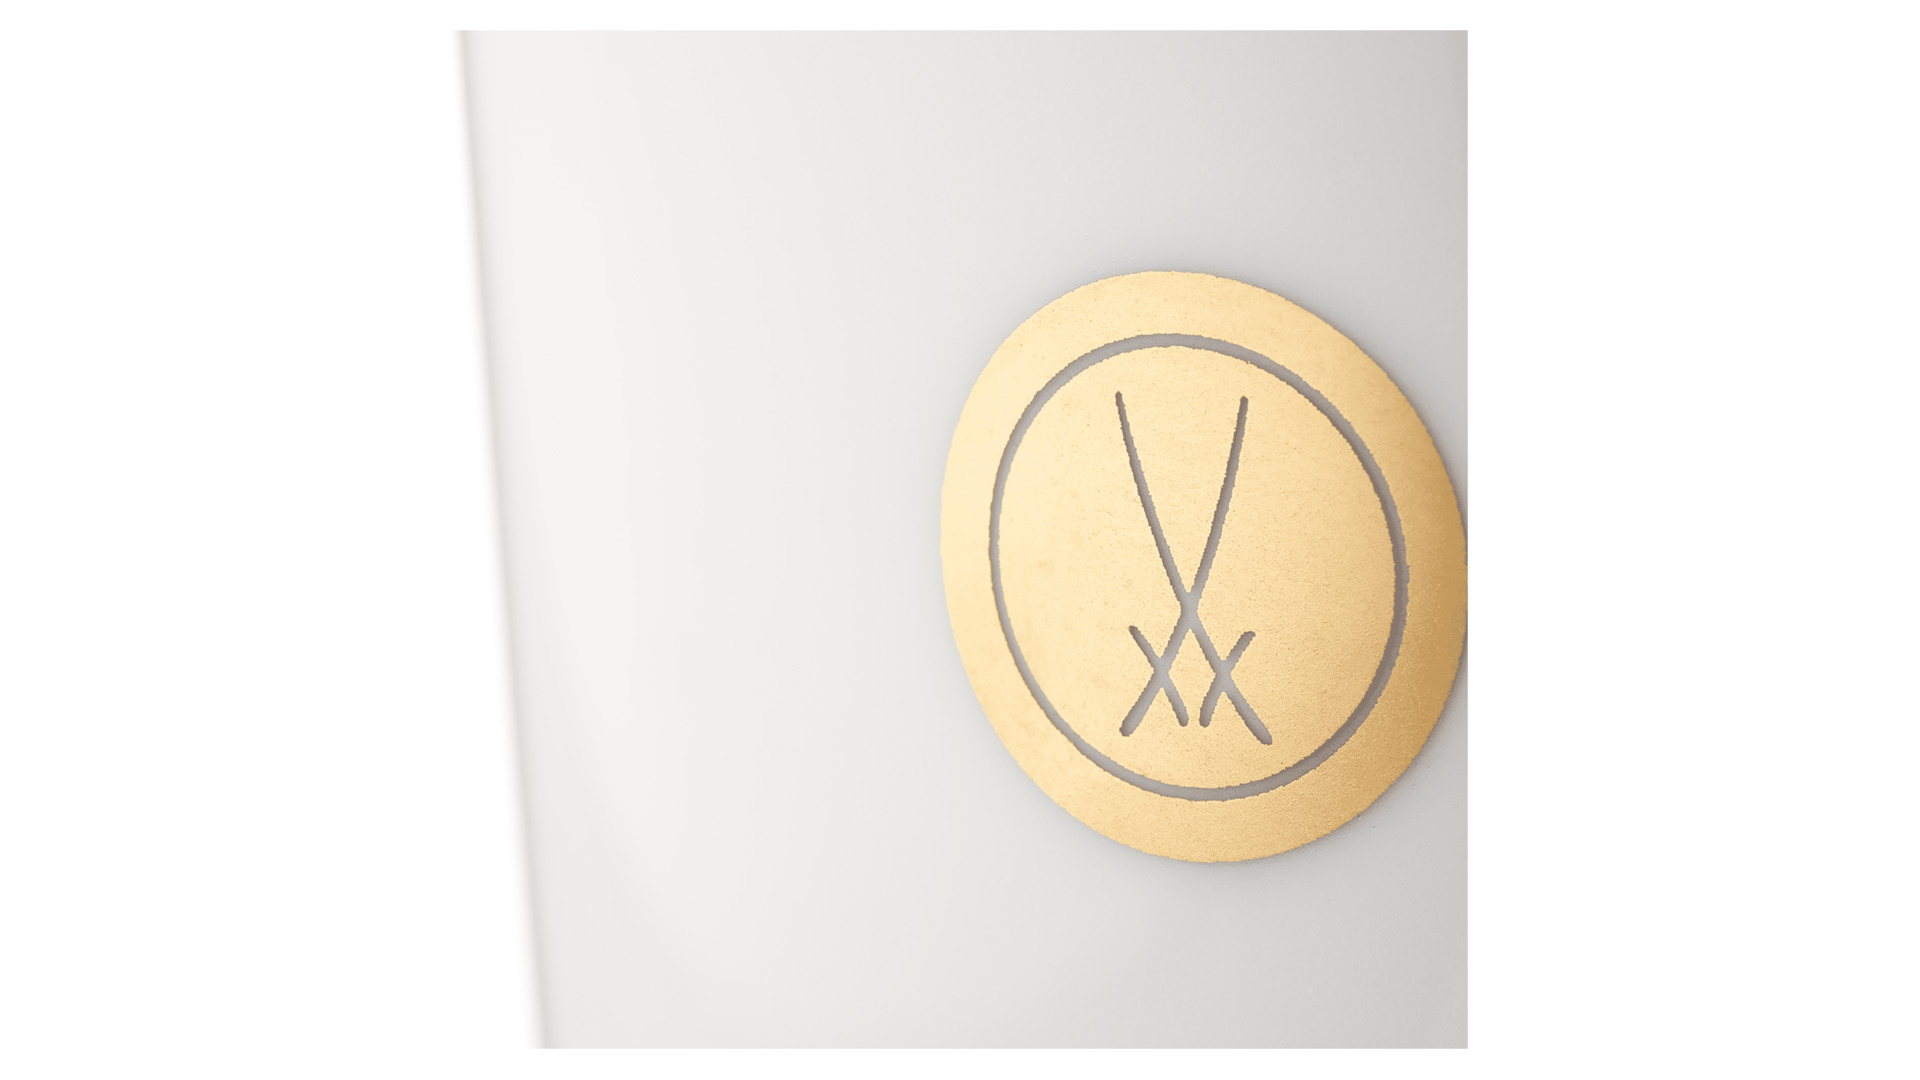 Кружка Meissen Мечи Meissen, золотой кант, медальон, 250мл